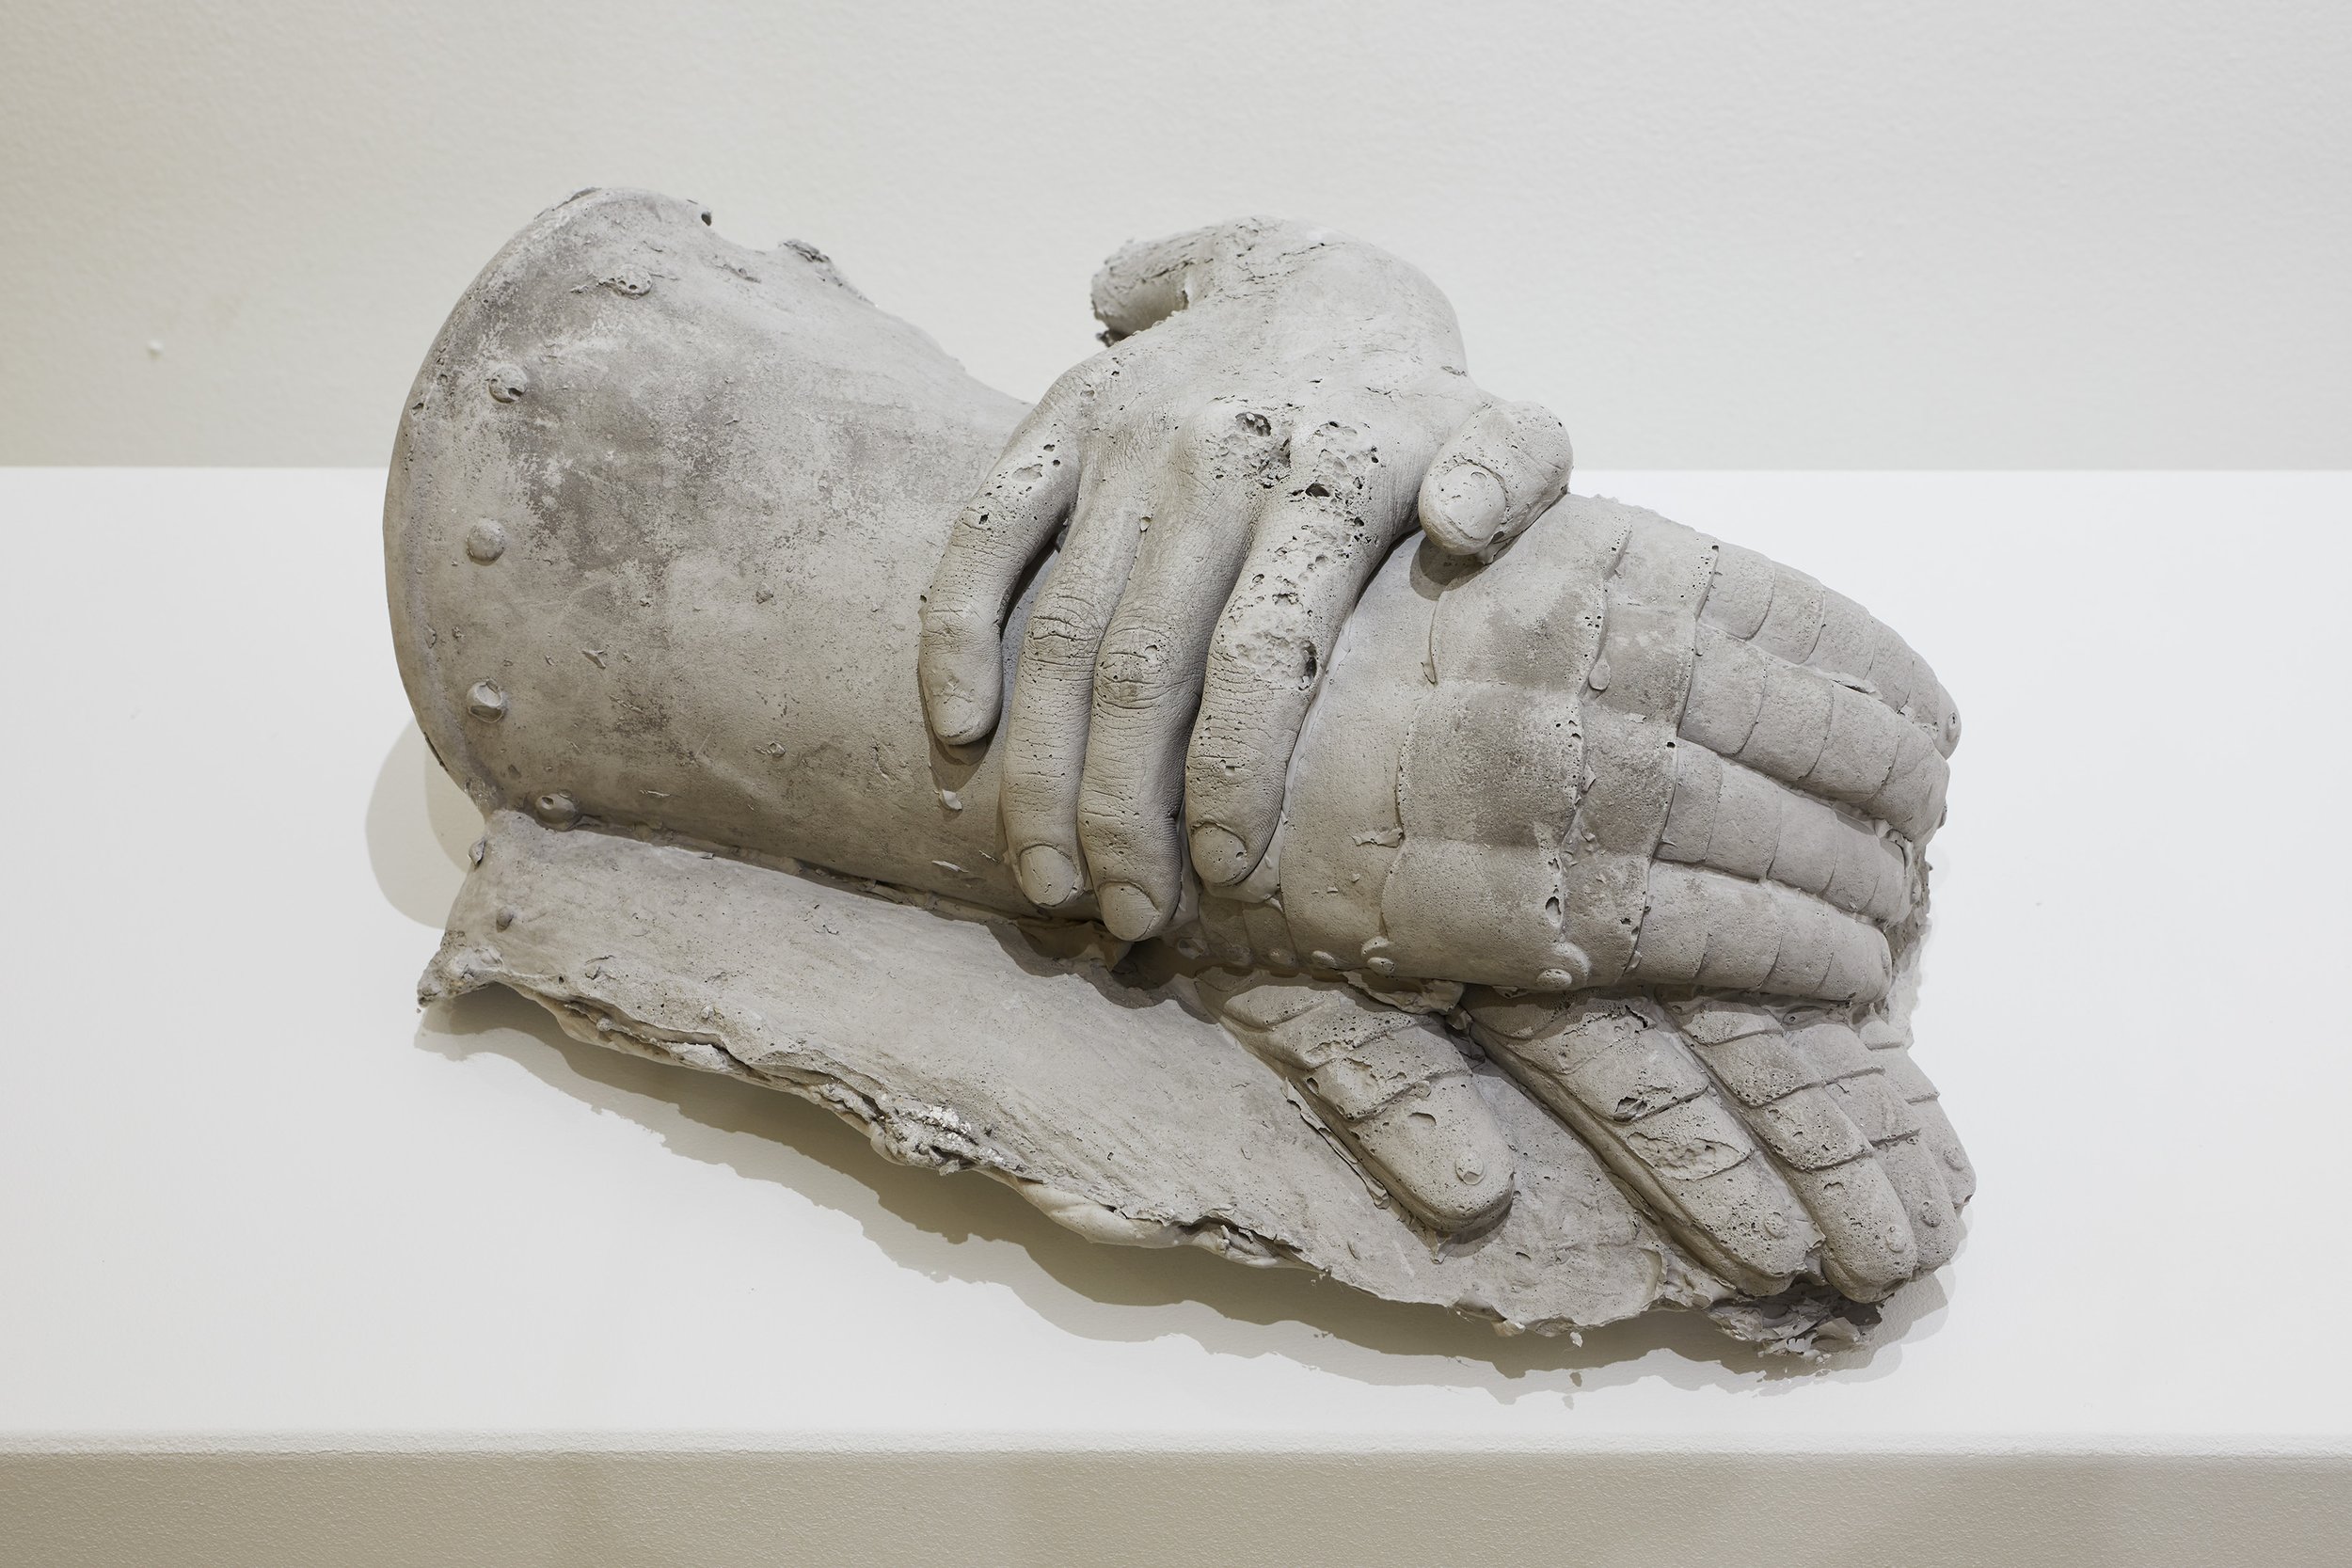   Les mains de Jeanne d’Arc , 2019  Concrete, steel   34 x 25 x 15 cm   Ed. 6 + 2 E. A.   INQUIRY  